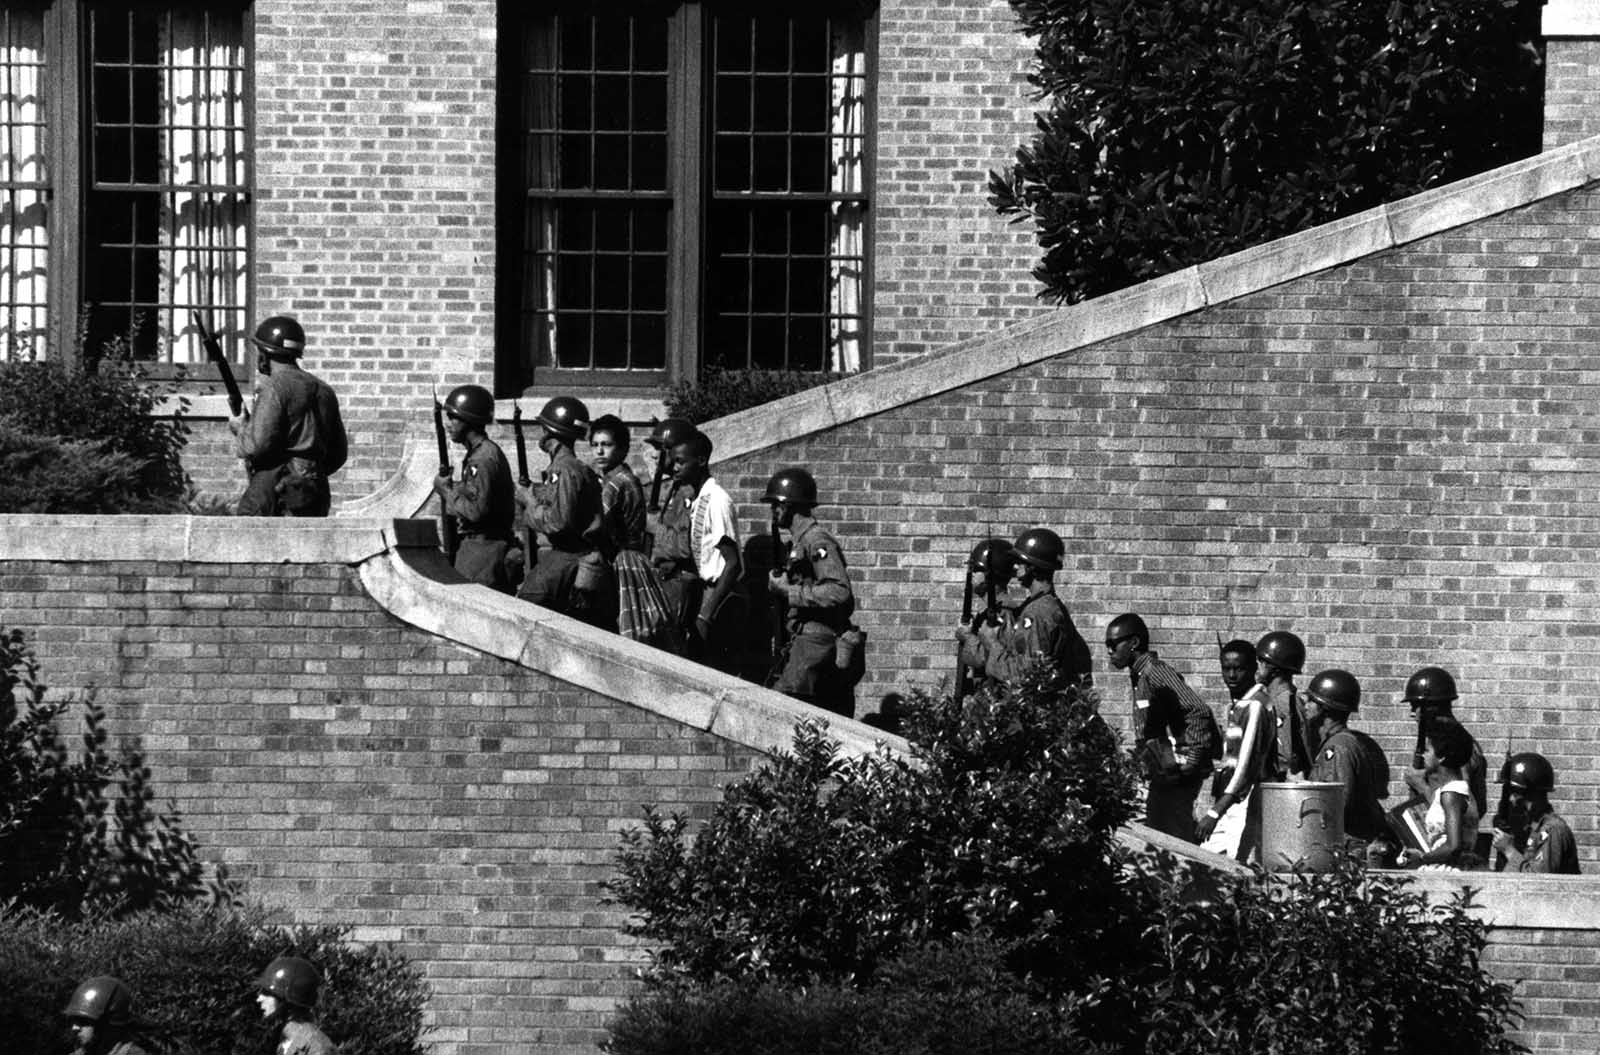 חיילים מהדיוויזיה המוטסת ה-101, אשר נשלחו בהוראת הנשיא אייזנהאואר ללוות את תשעת התלמידים האפרו-אמריקאים לתוך התיכון בליטל רוק שבארקנסו, על מנת לאכוף את צו בית המשפט (צילום: US Army/ ויקימדיה)